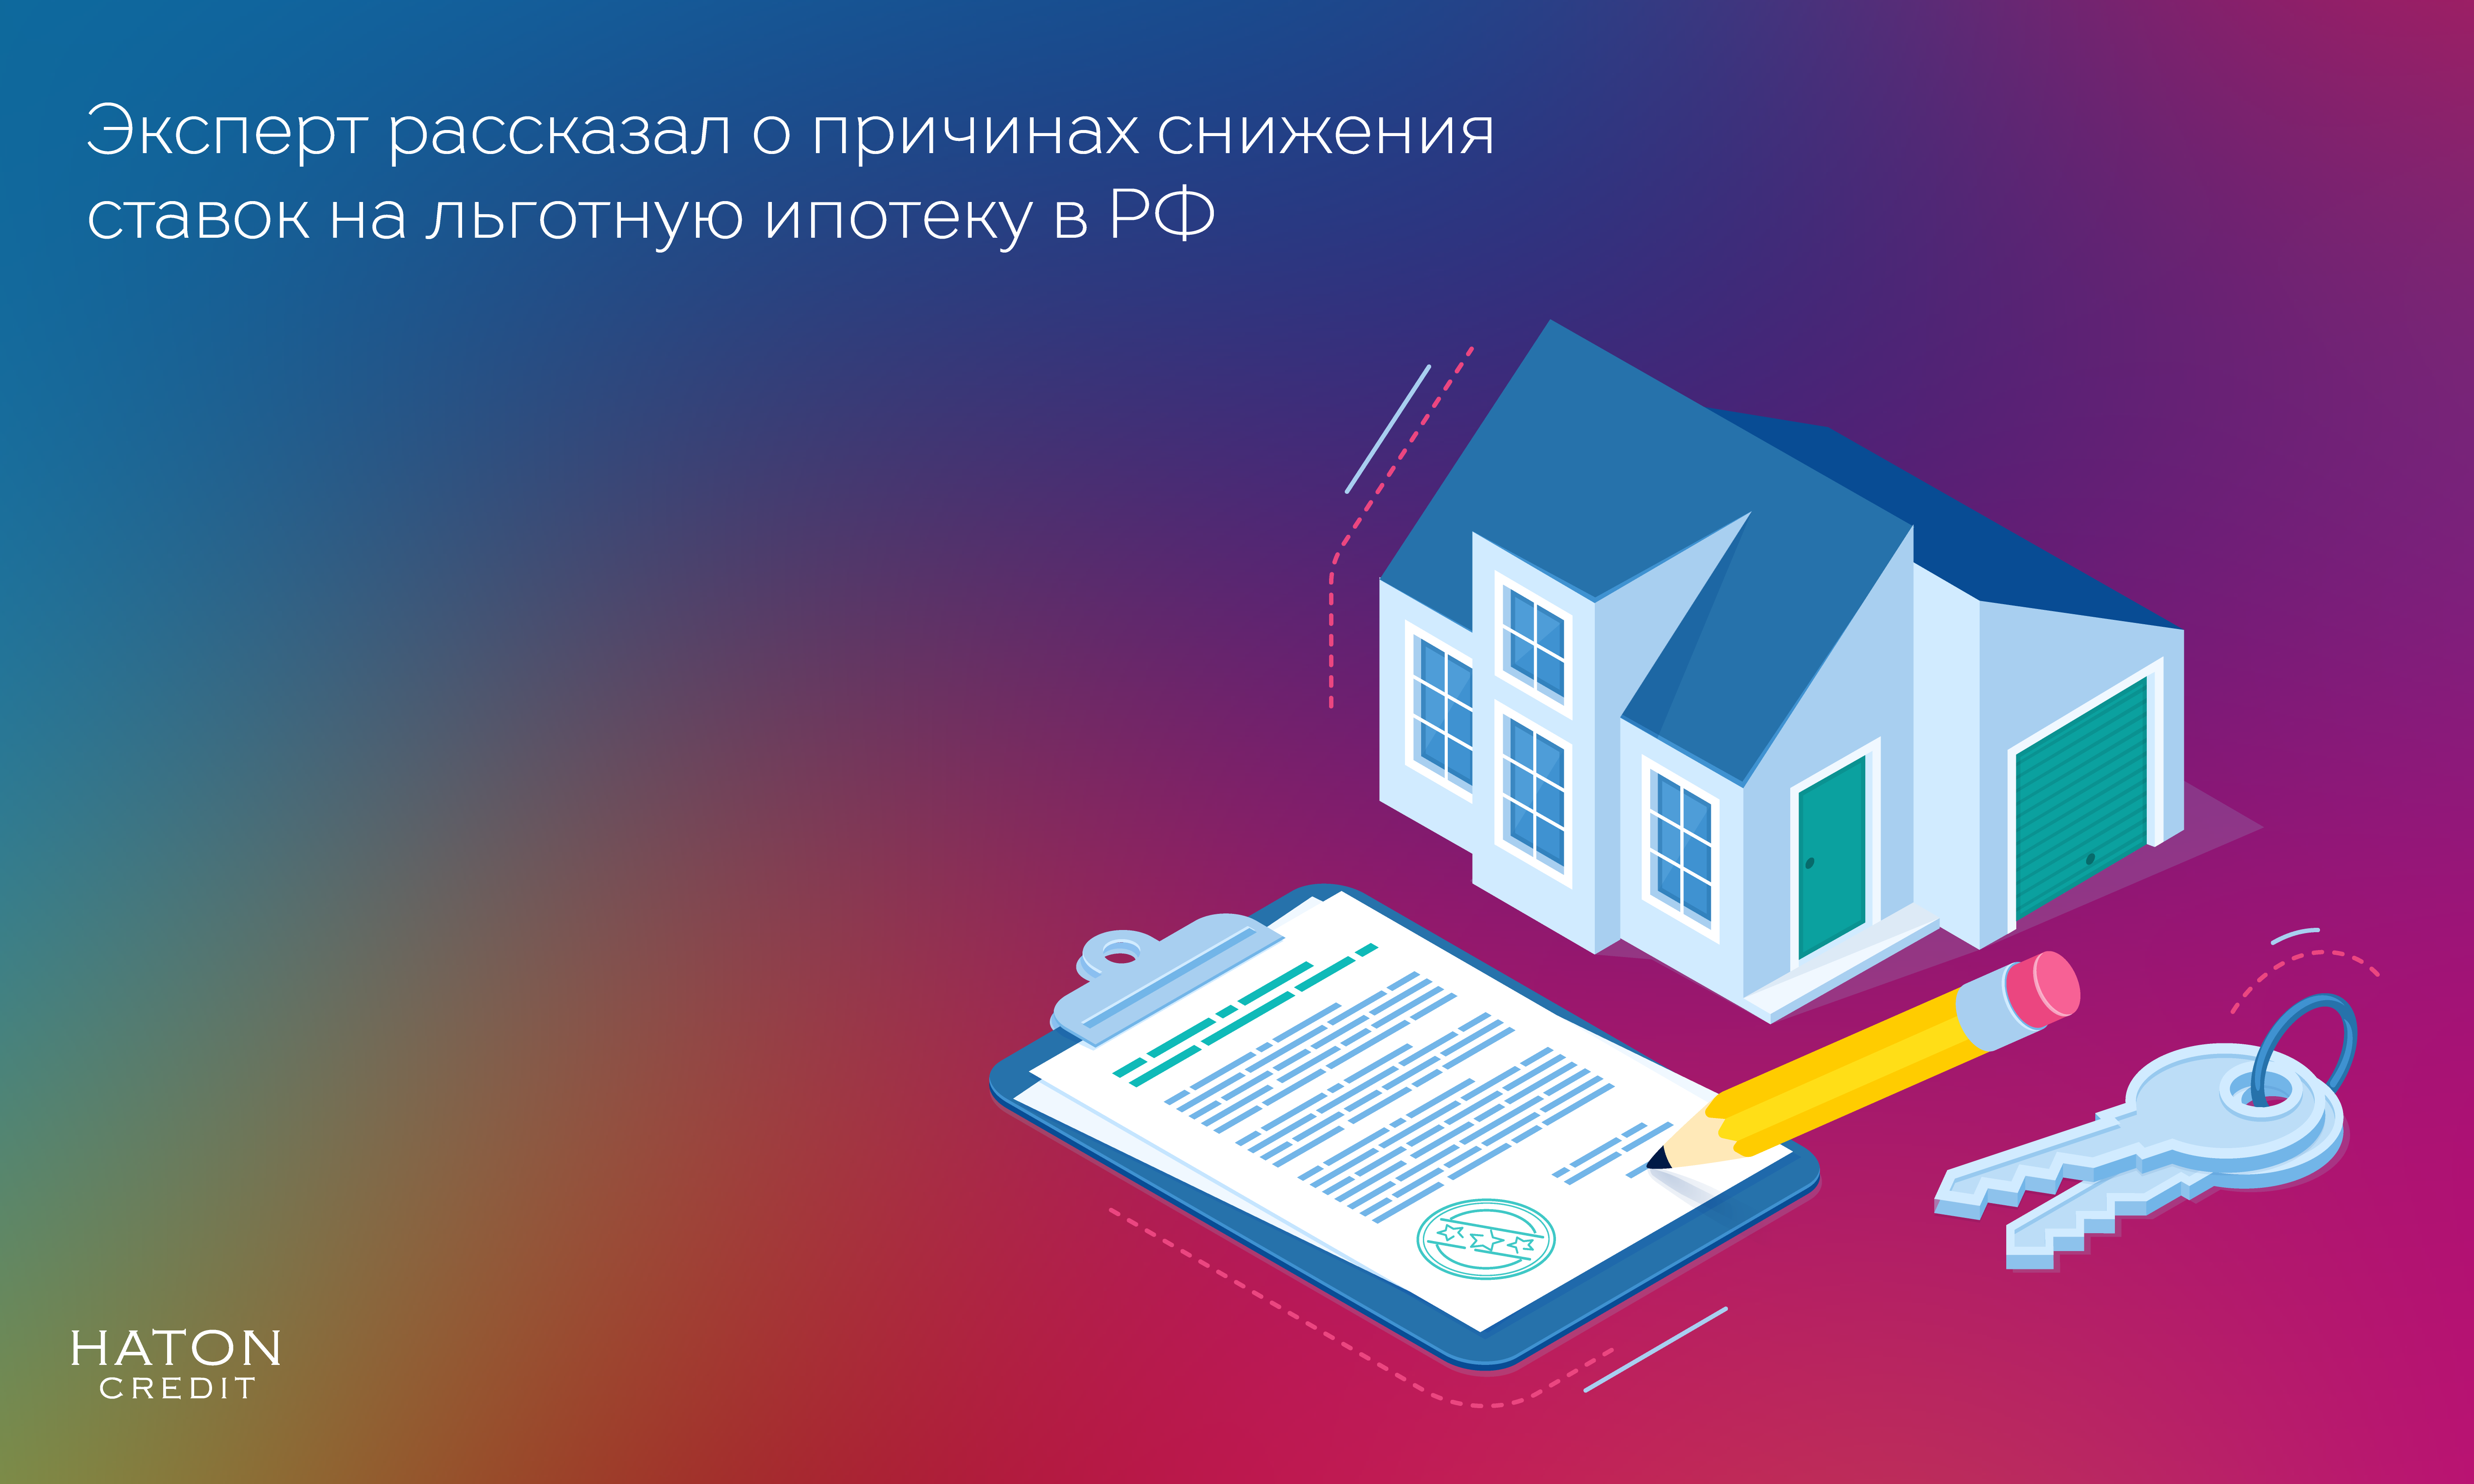 Эксперт рассказал о причинах снижения ставок на льготную ипотеку в РФ